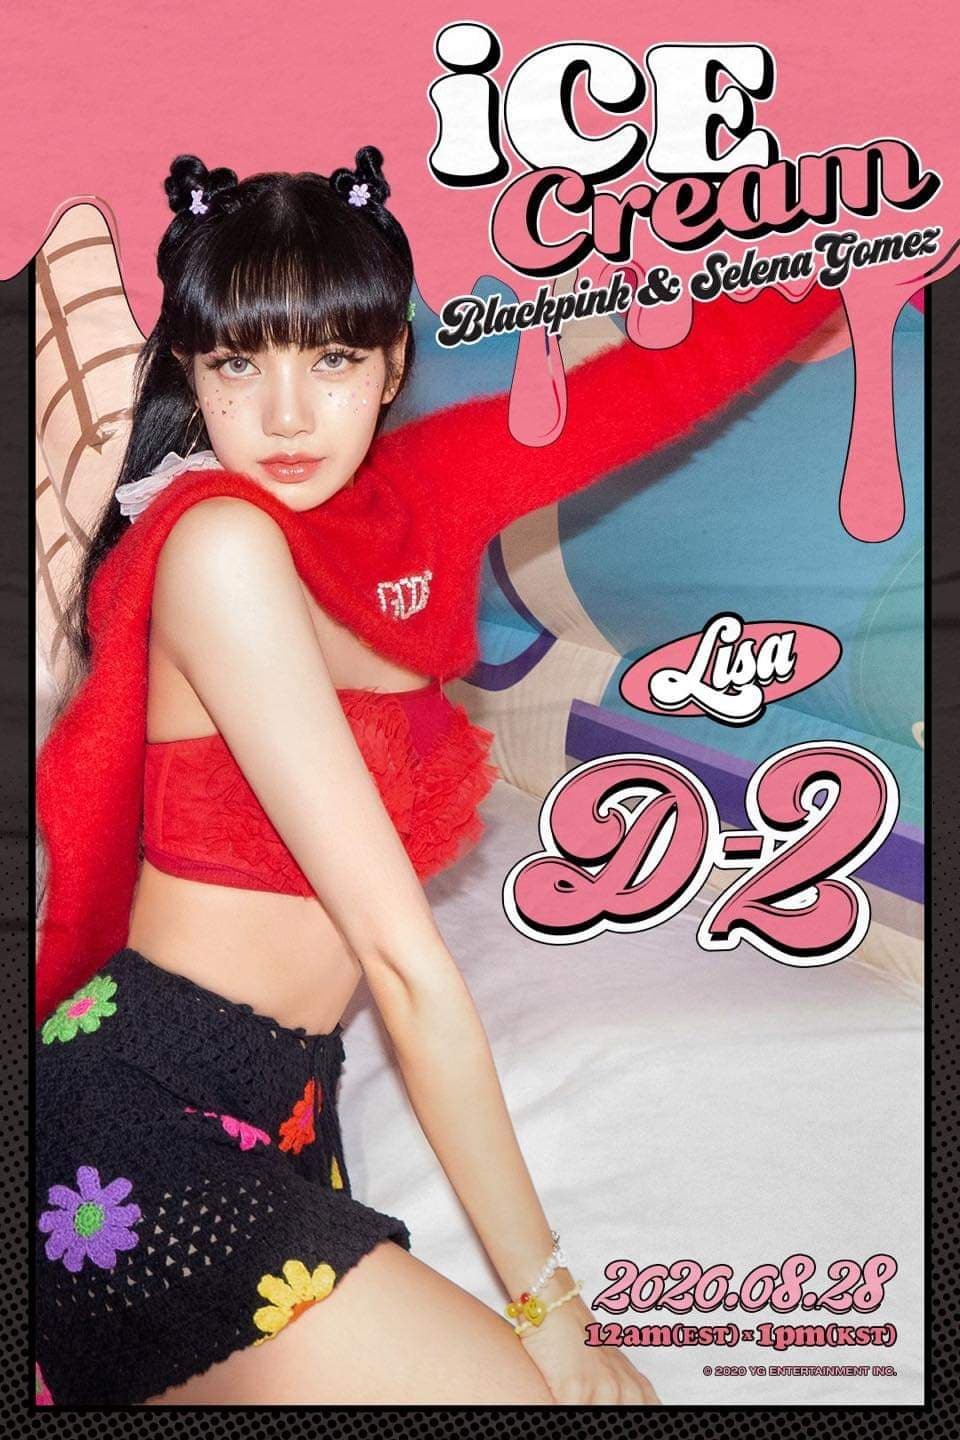 Lisa Blackpink biến hóa trong poster quảng bá MV mới “Ice Cream“. Ảnh: Mnet.